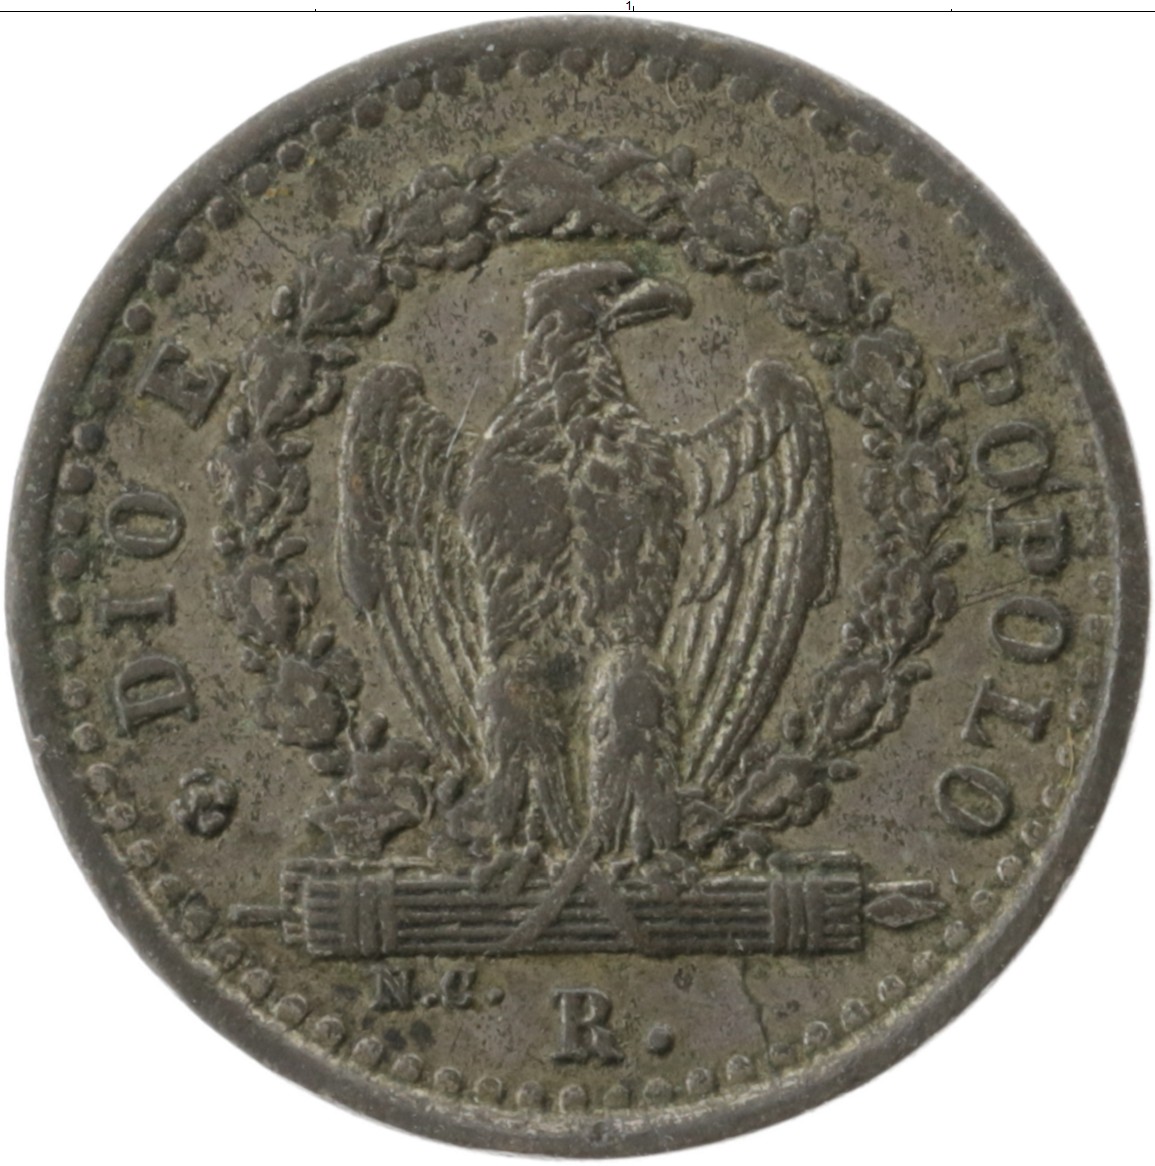 Монеты италии стоимость каталог